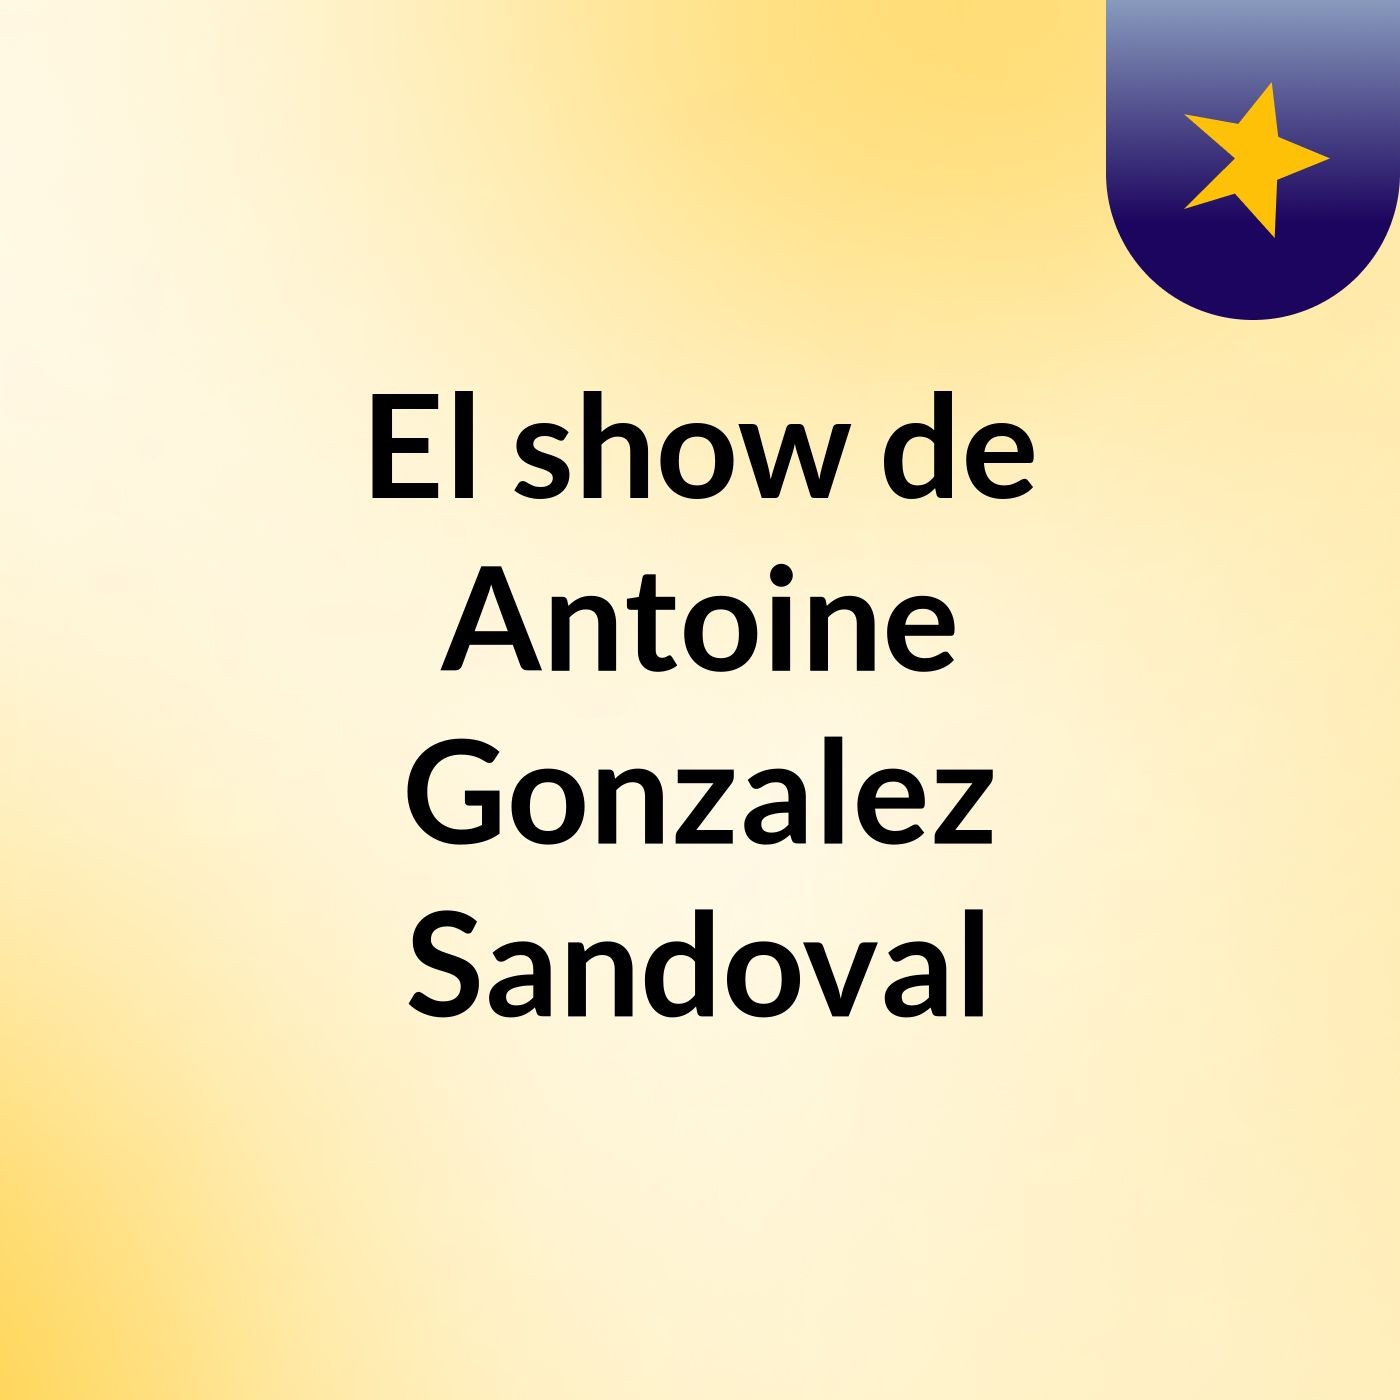 El show de Antoine Gonzalez Sandoval